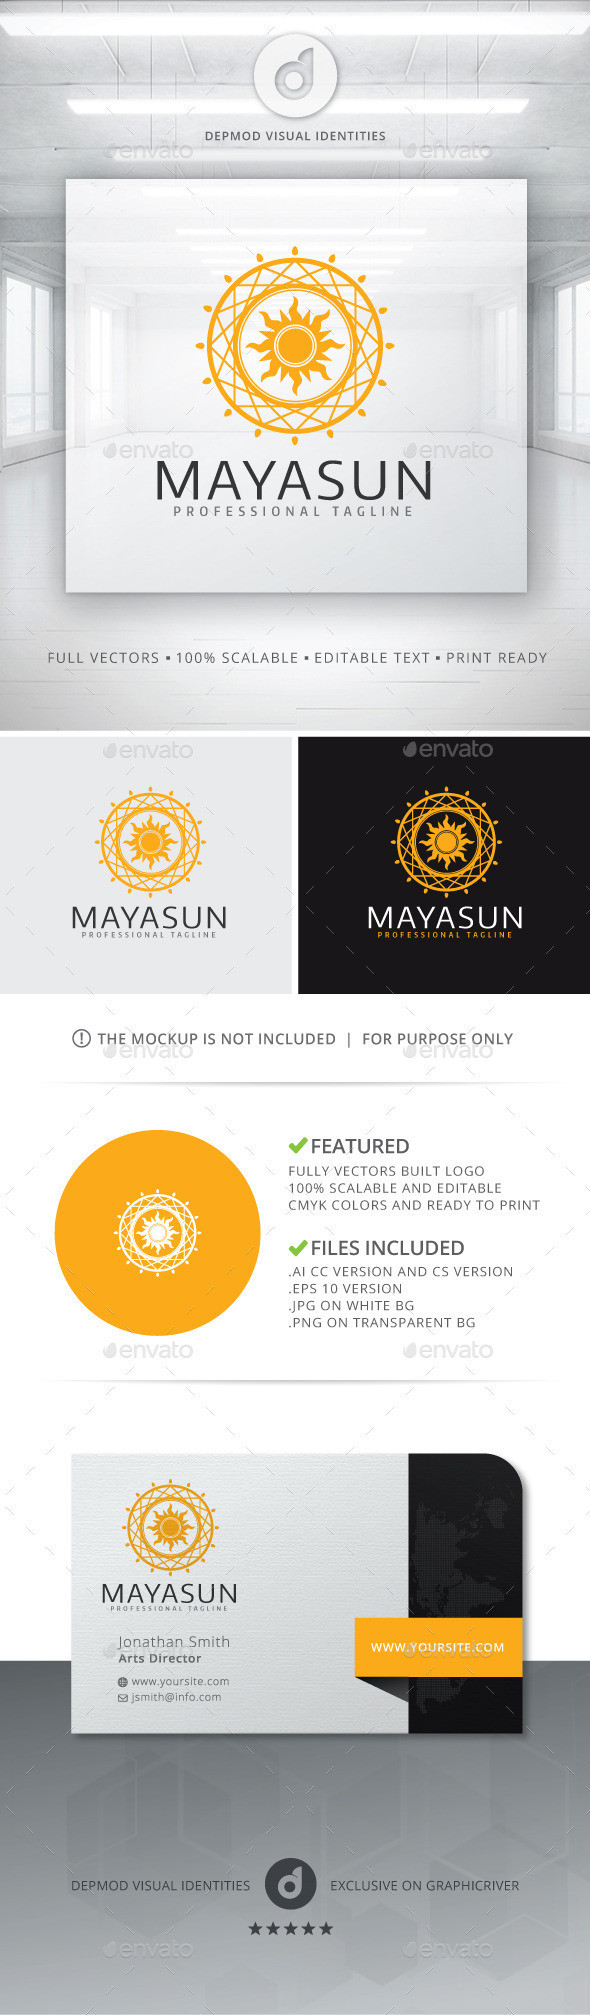 Mayasun logo